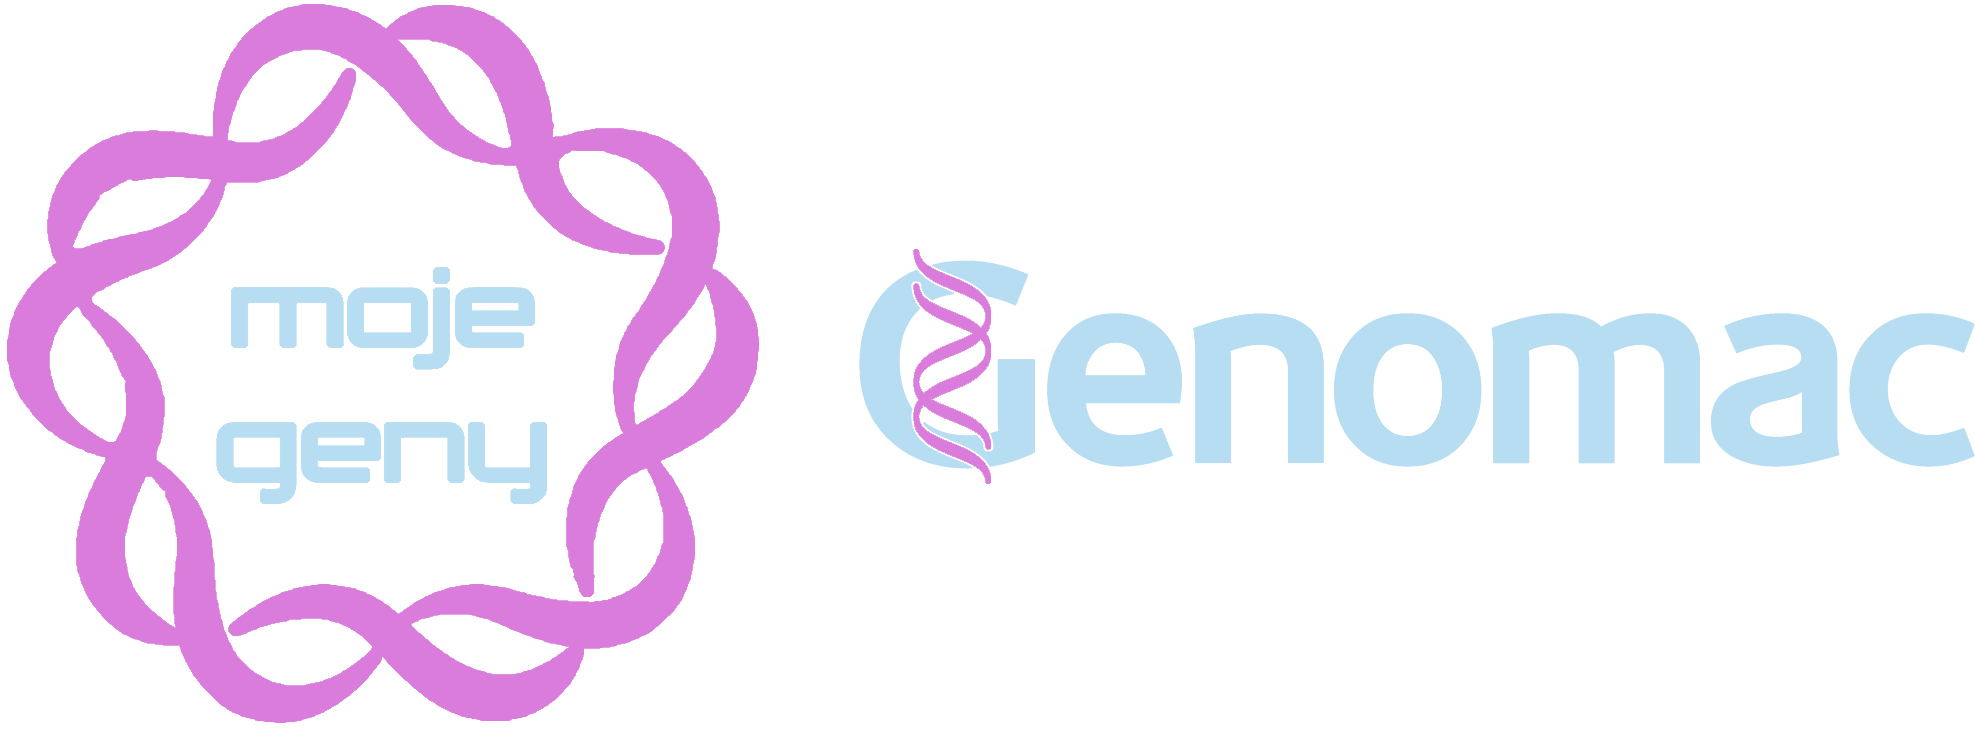 Genomac